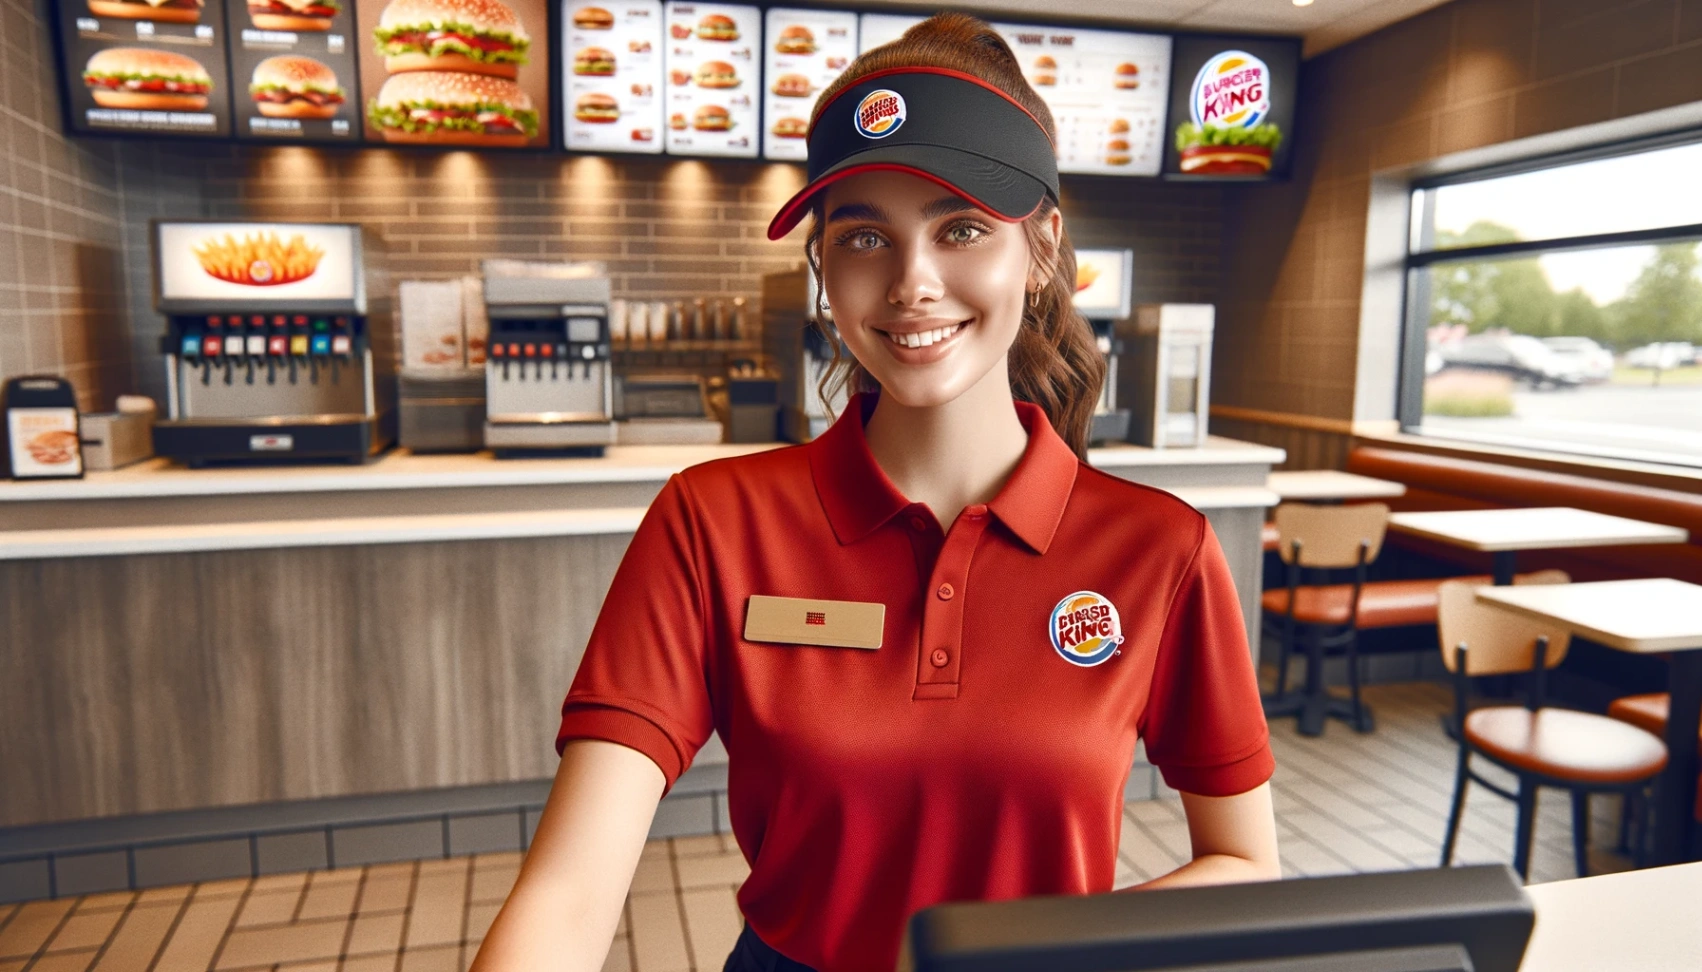 งาน Burger King : ขั้นตอนการสมัครงานที่ง่าย